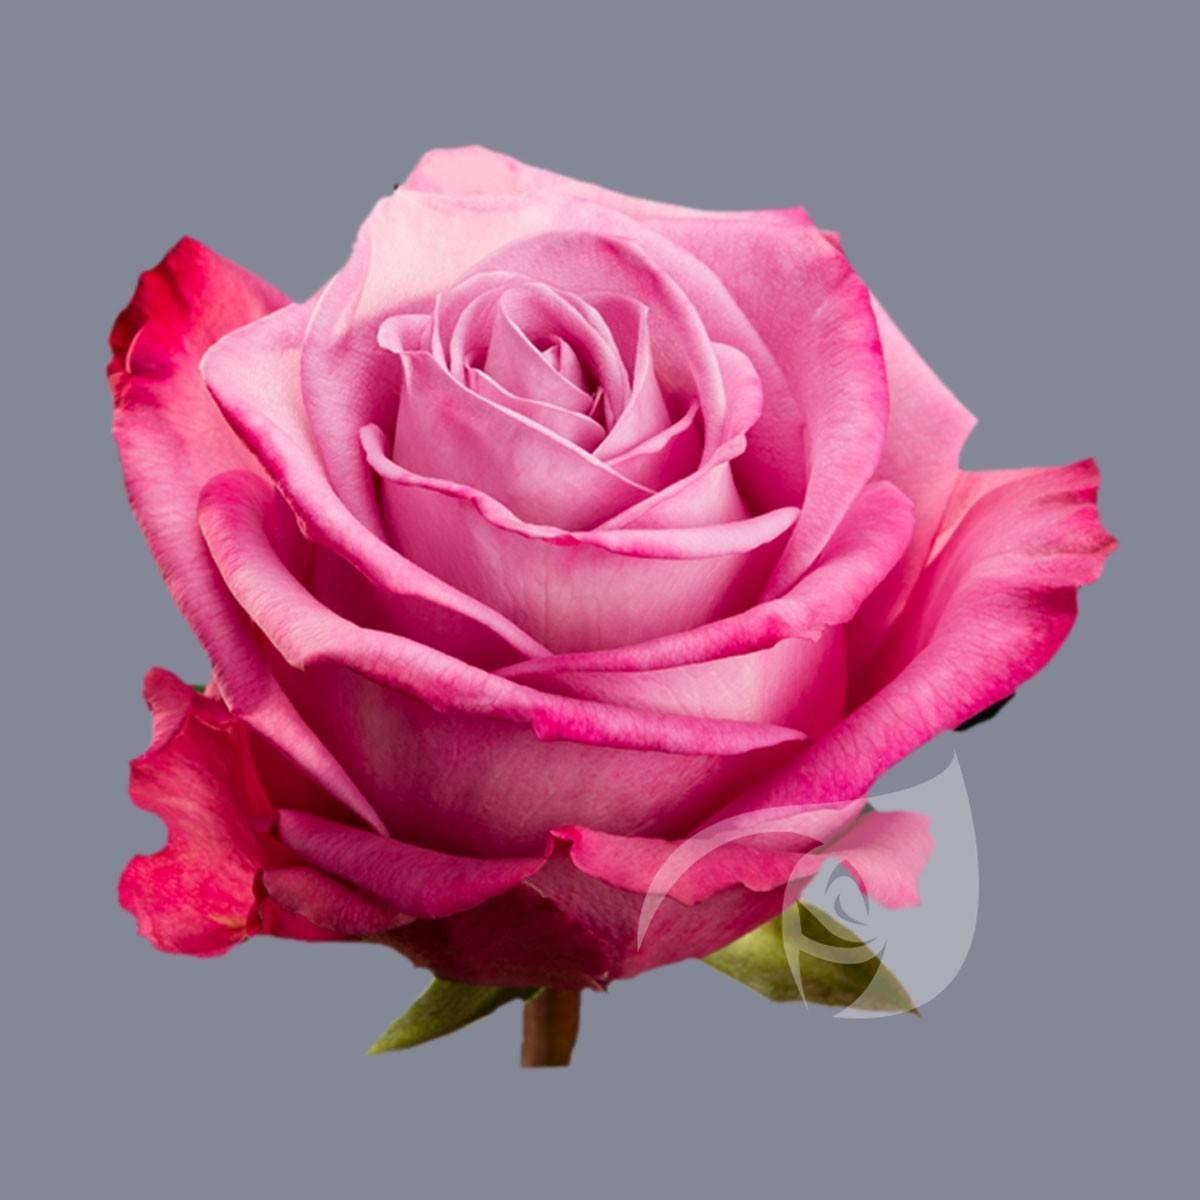 О розе Moody blues: описание и характеристики сорта чайно гибридной розы